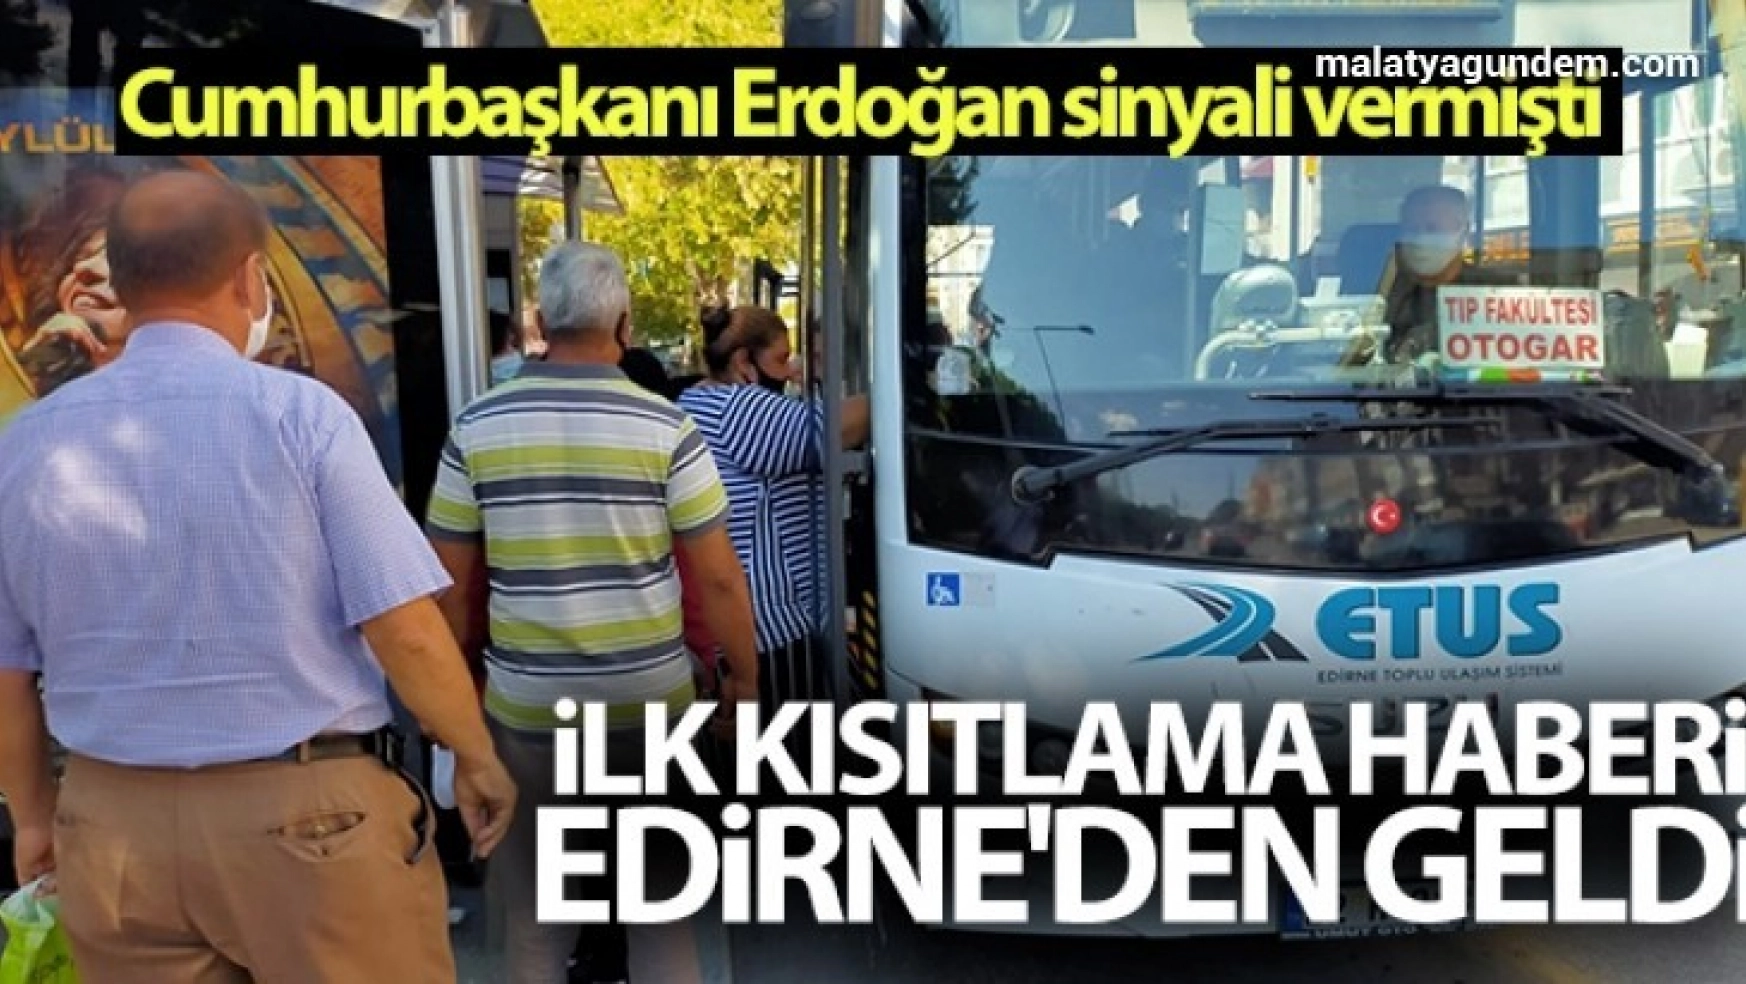 Cumhurbaşkanı Erdoğan sinyali vermişti, ilk kısıtlama haberi Edirne'den geldi